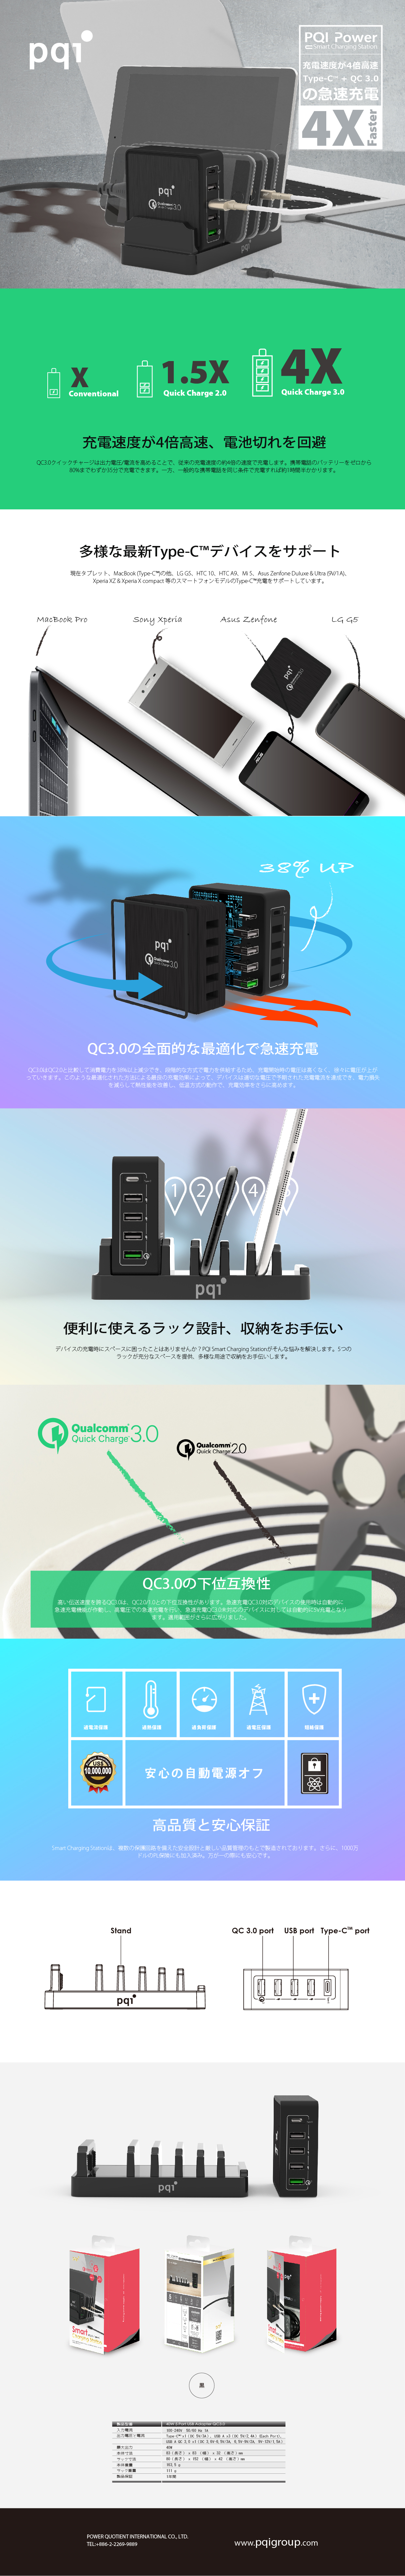 smartchargingstation_edm_jp-01